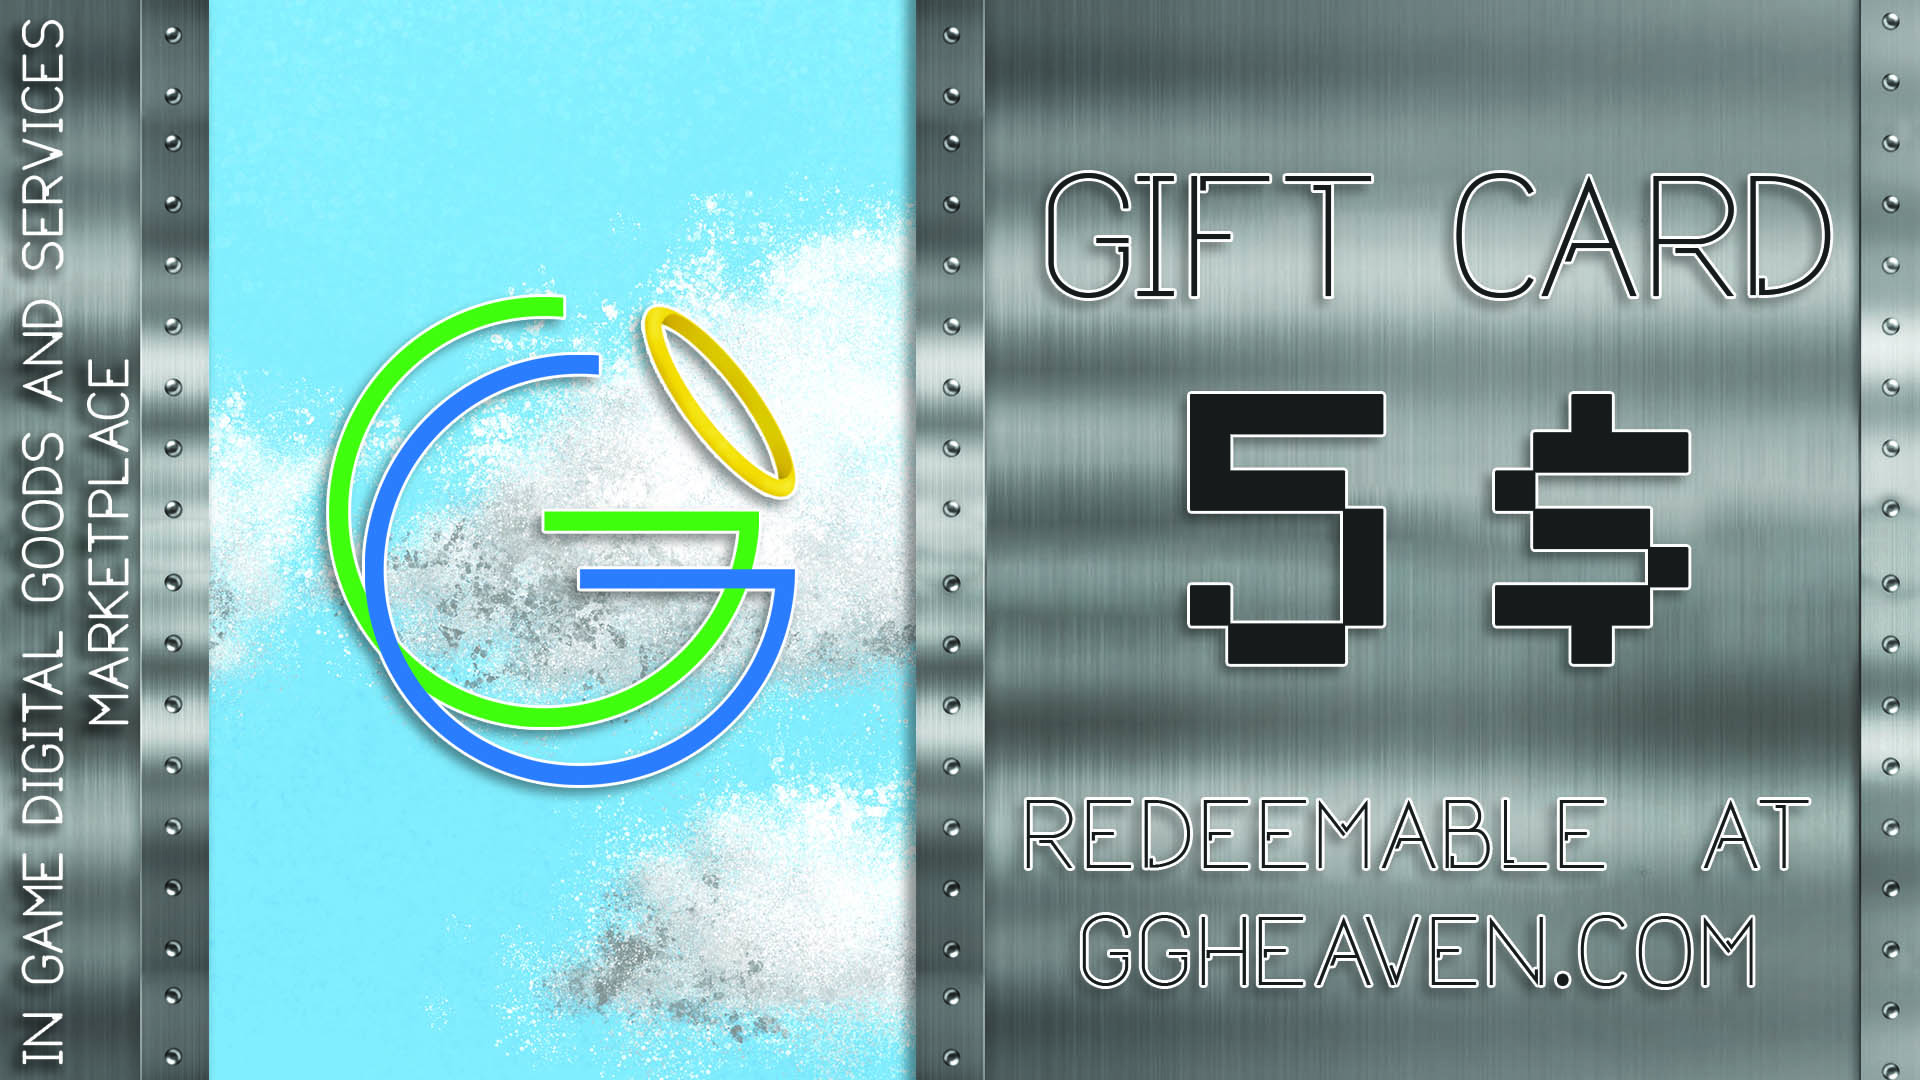 GGHeaven.com 5$ Gift Card 6.27$